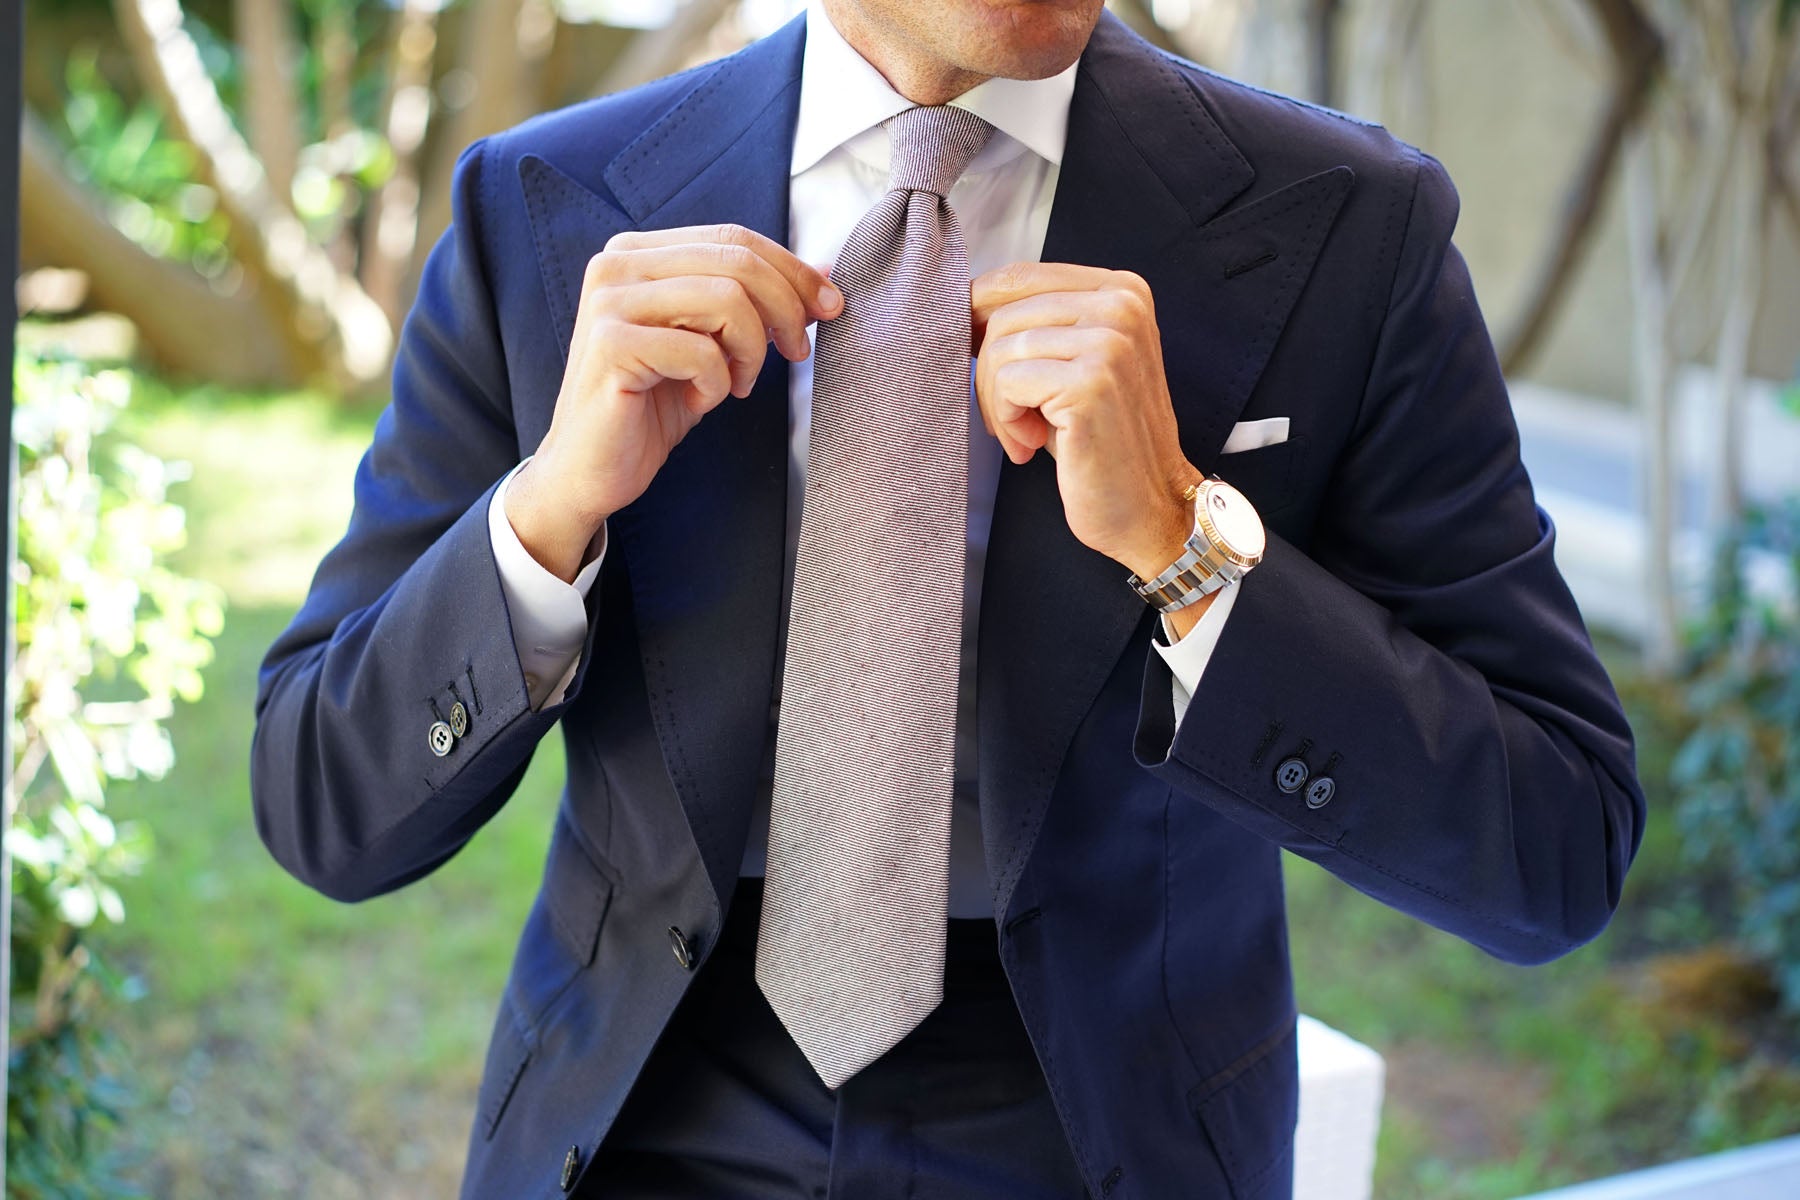 Brown & White Twill Stripe Linen Necktie | Shop Handmade Ties for Men ...